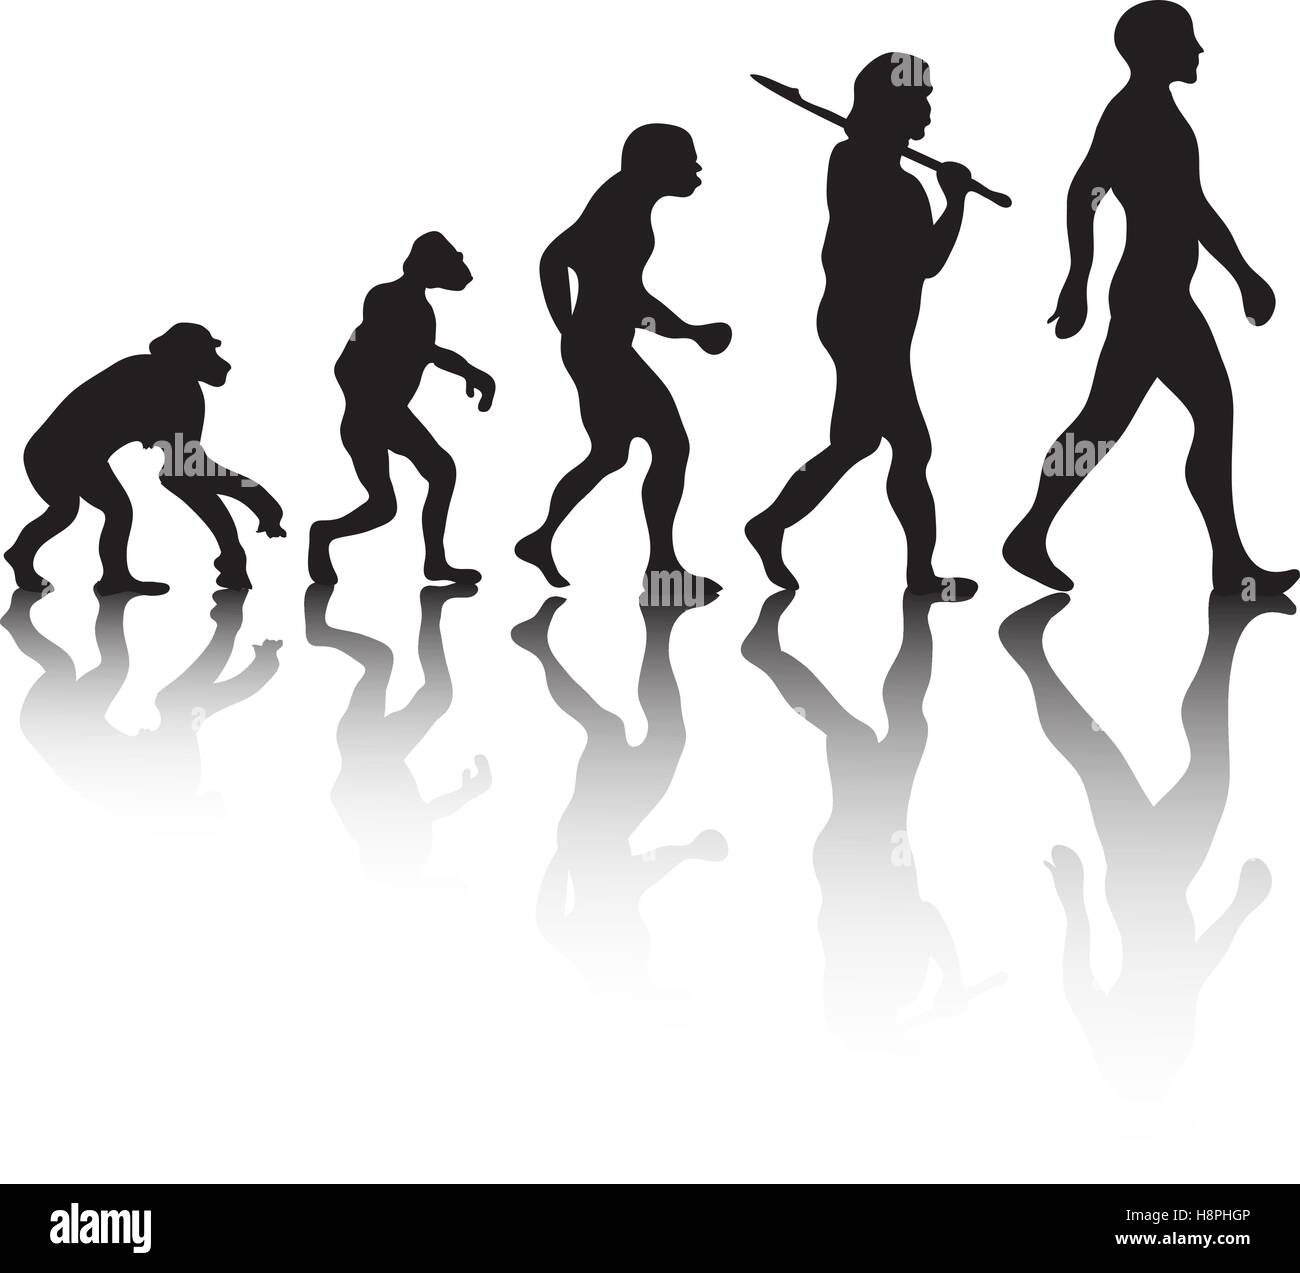 Die Evolution, Silhouette Menschen. Darwin Theorie. Vektor-illustration Stock Vektor